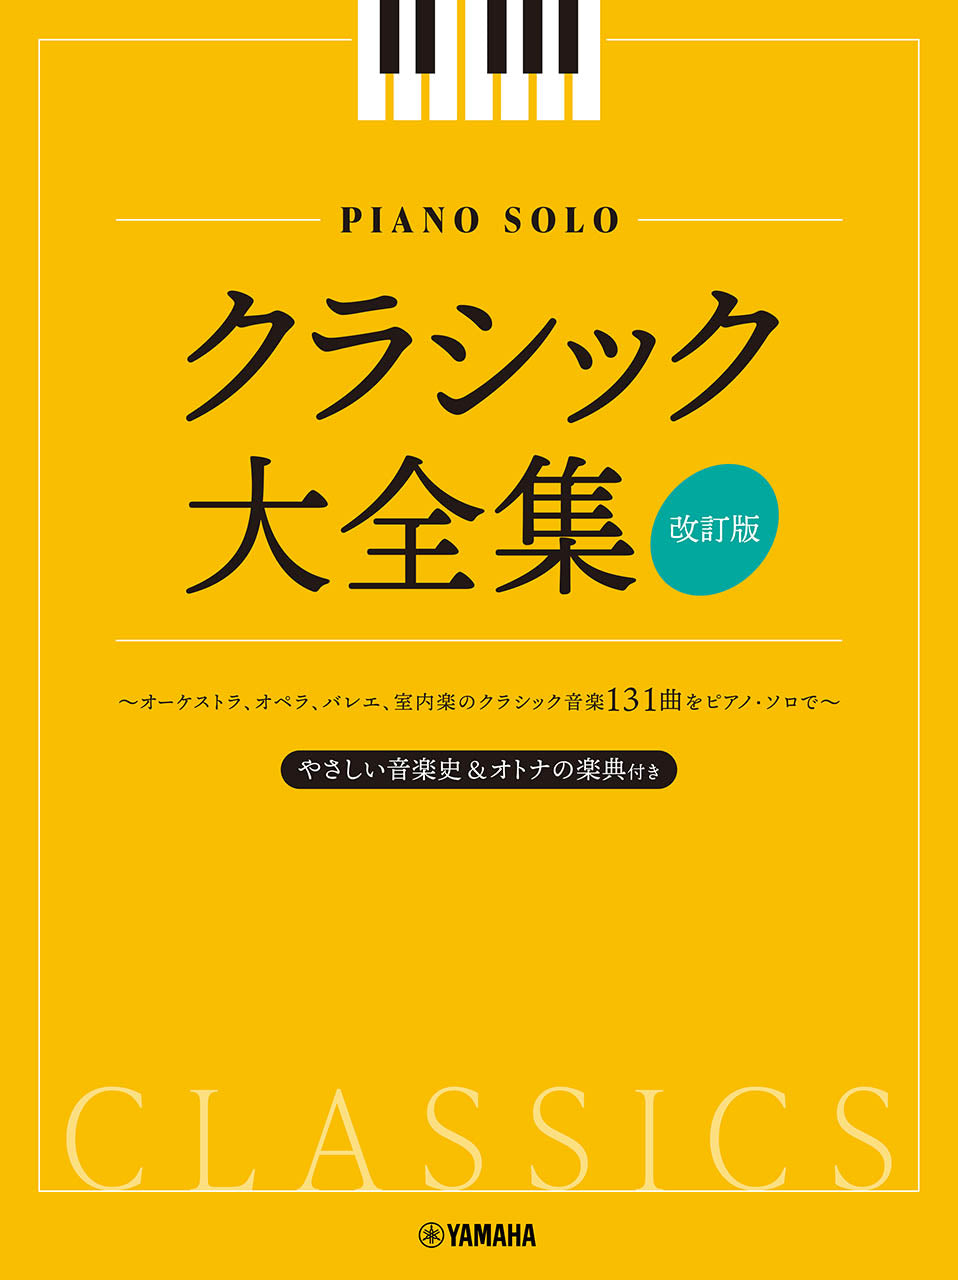 ウェーバー ピアノ曲集 ピアノ・ソナタ第2番 舞踏への勧誘 - クラシック